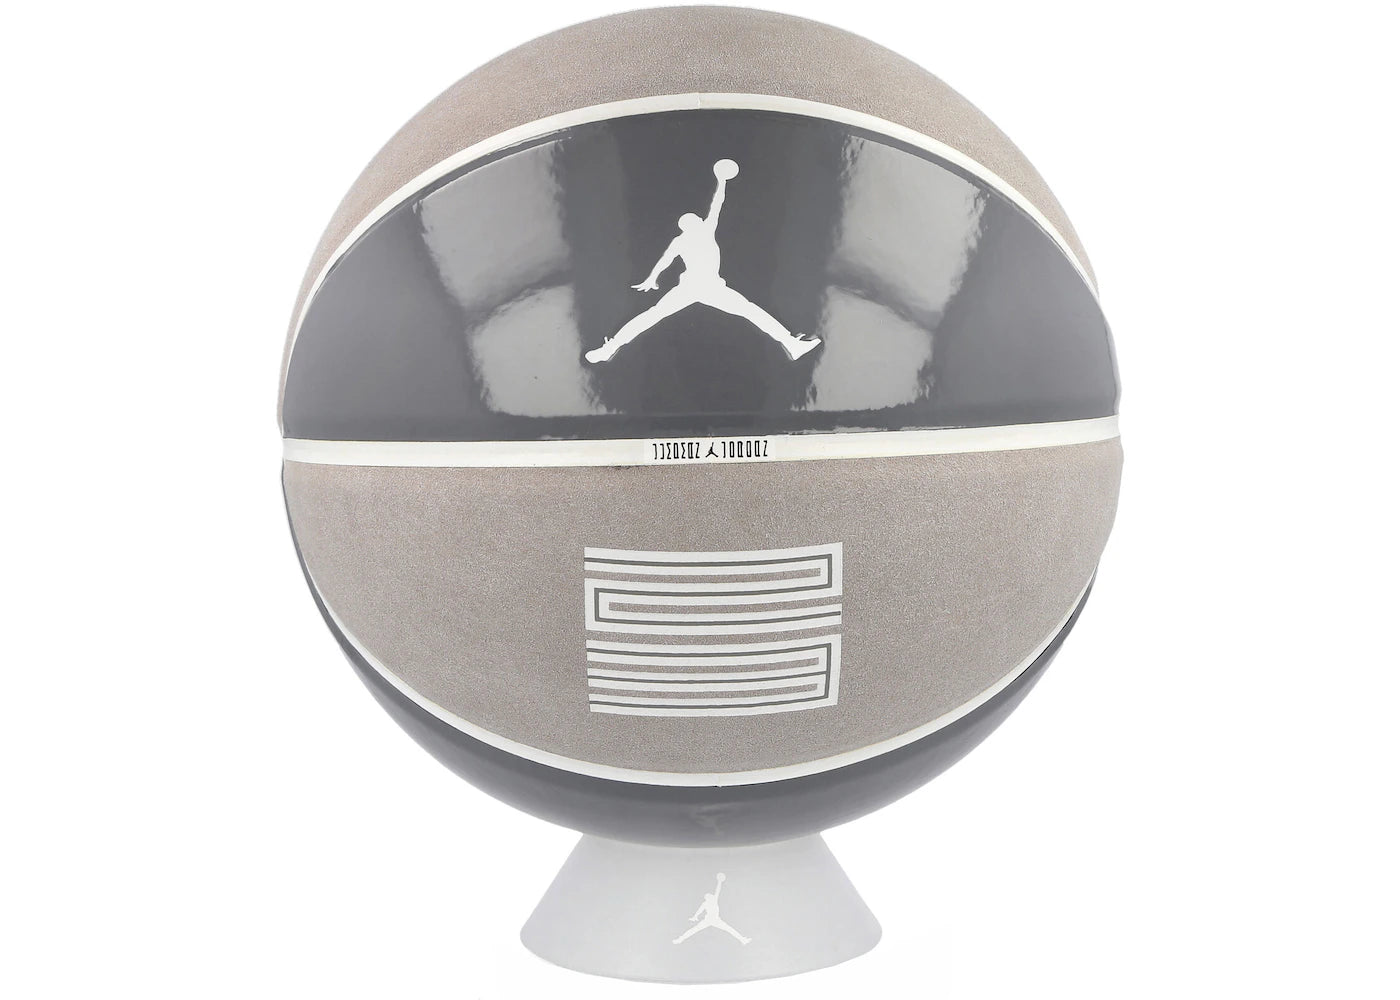 Jordan Premium Basketball Cool Grey